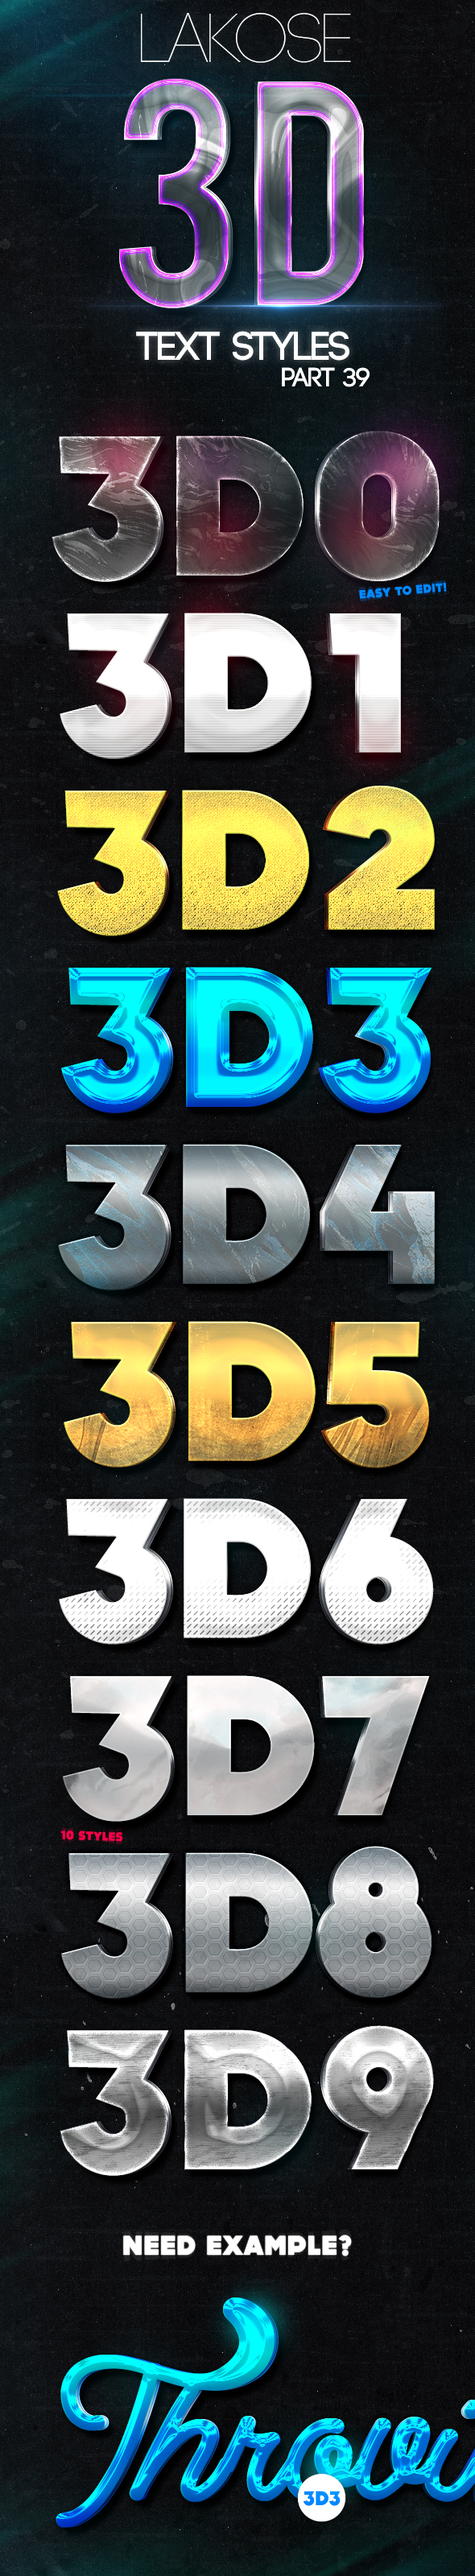 金属质感3D文字的PS图层样式 Lakose 3D Text Styles Part 39 [psd]插图